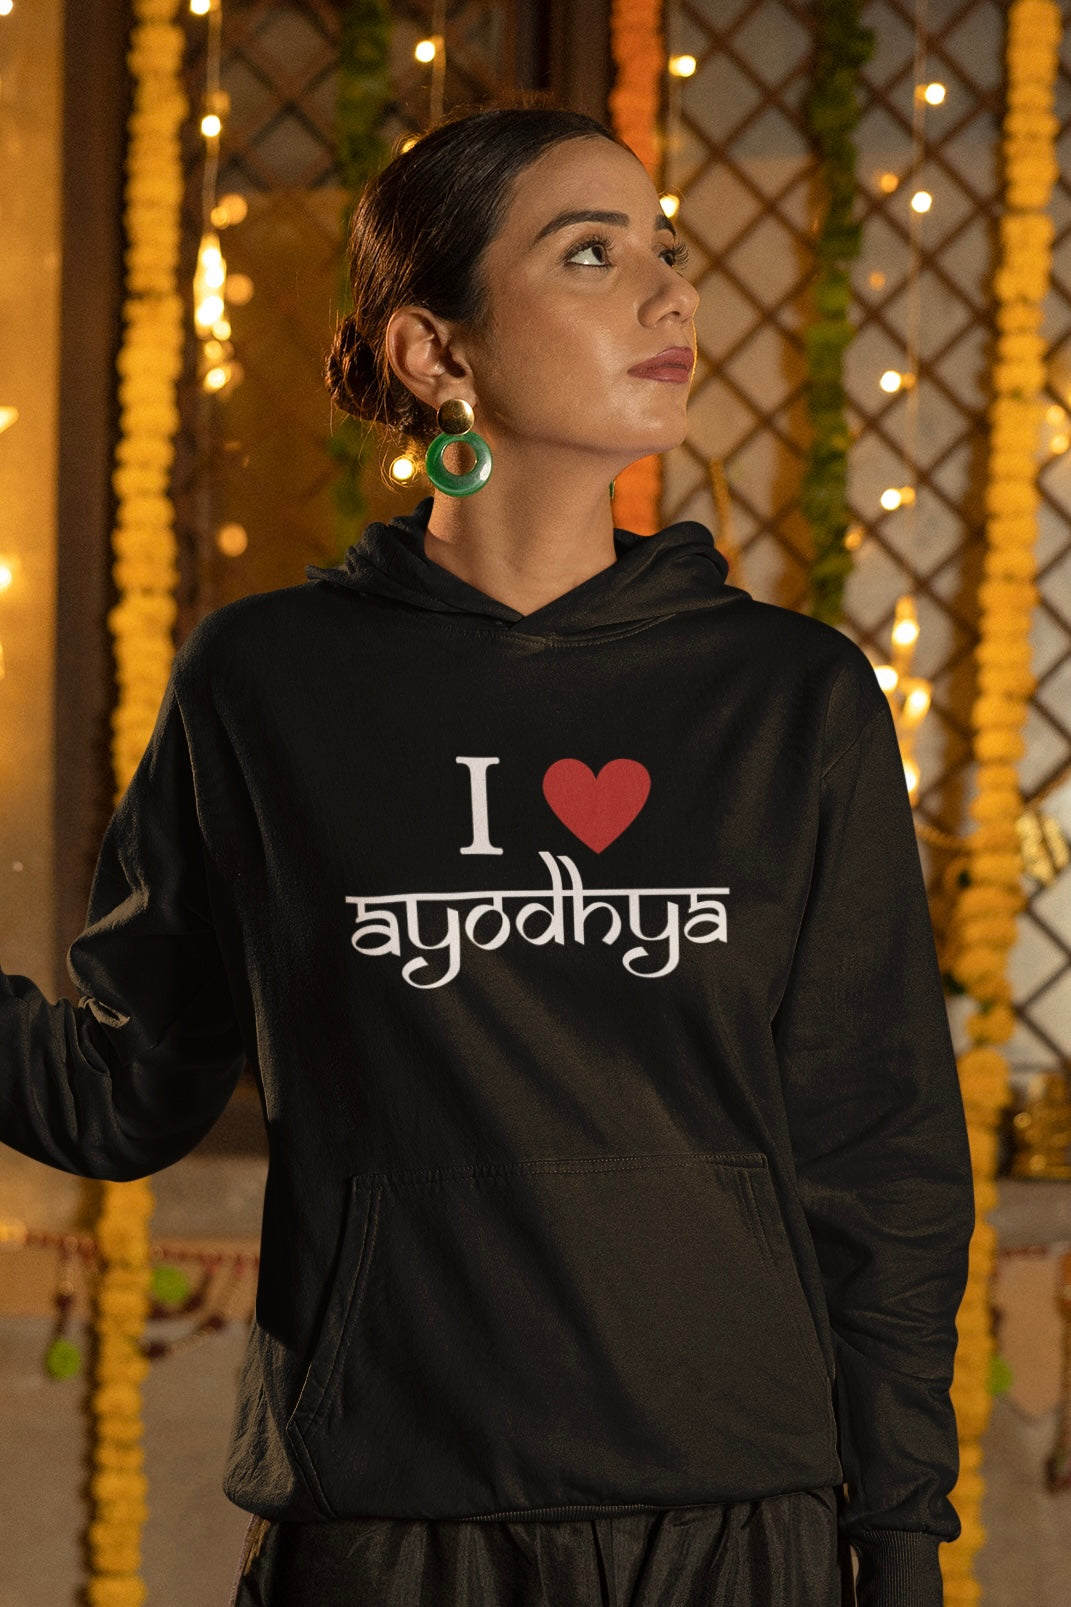 I Love Ayodhya Black Hooded Sweatshirt